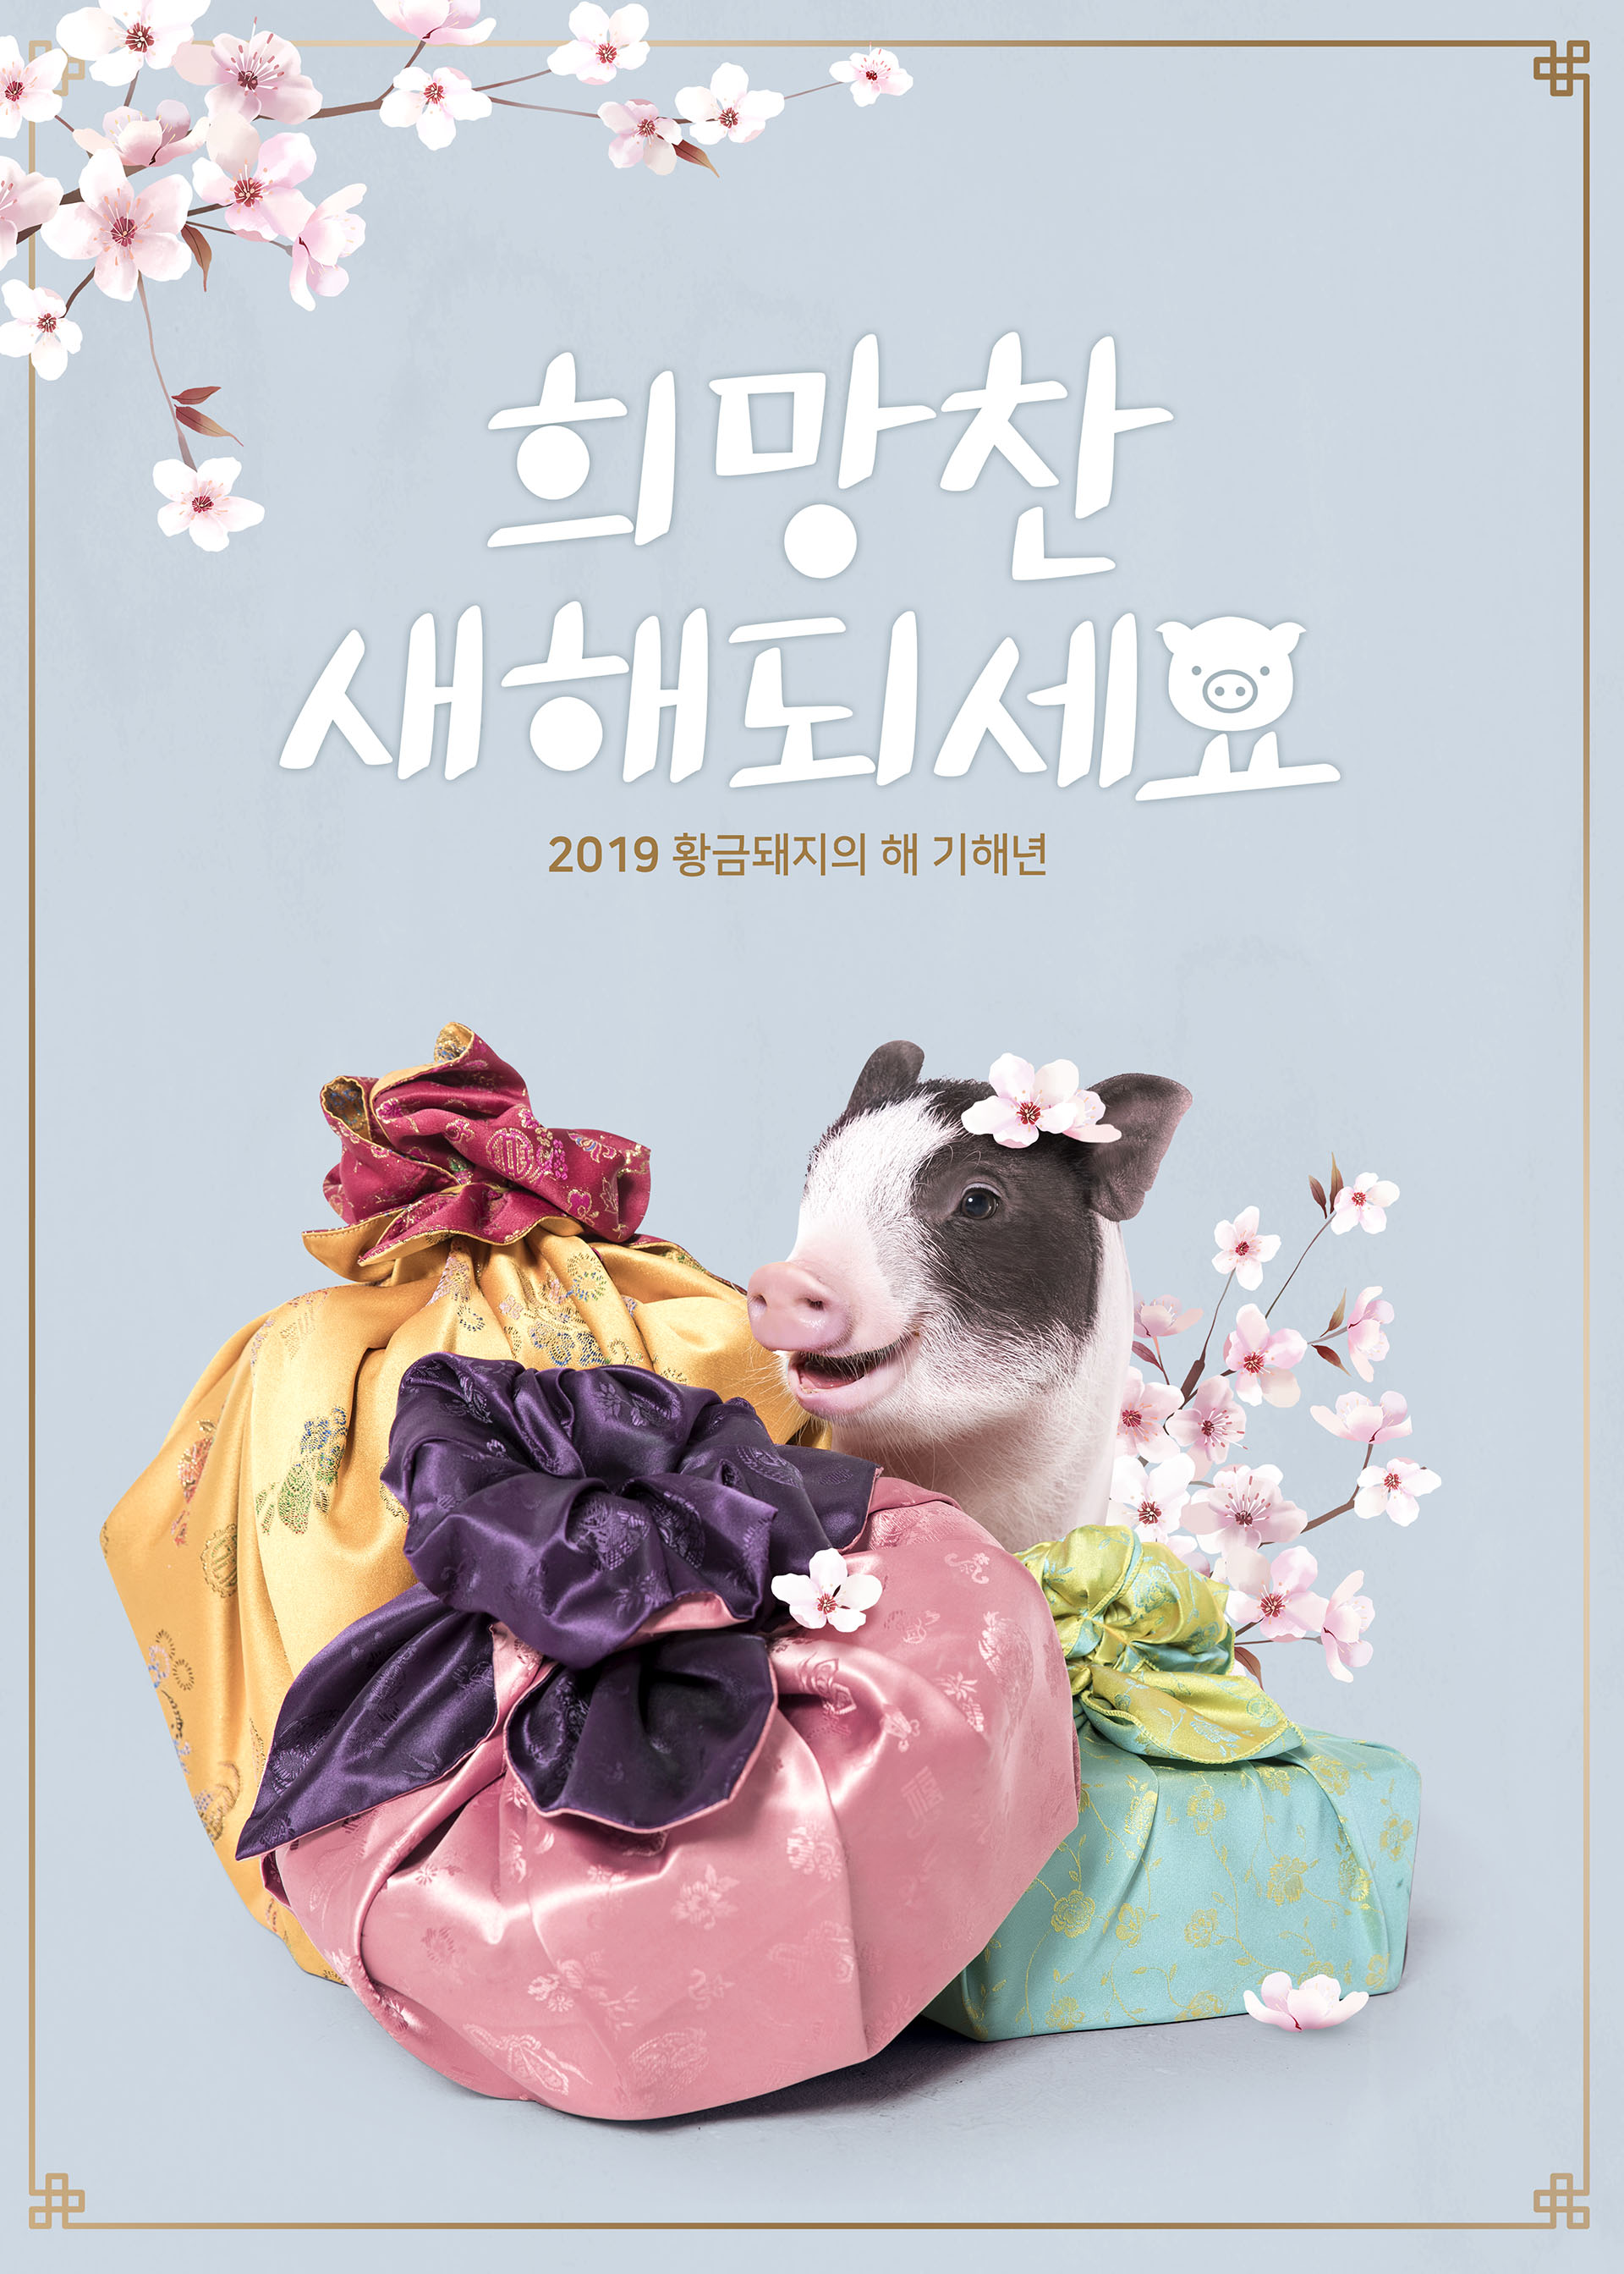 可爱富贵且时尚的猪年新年海报模板PSD